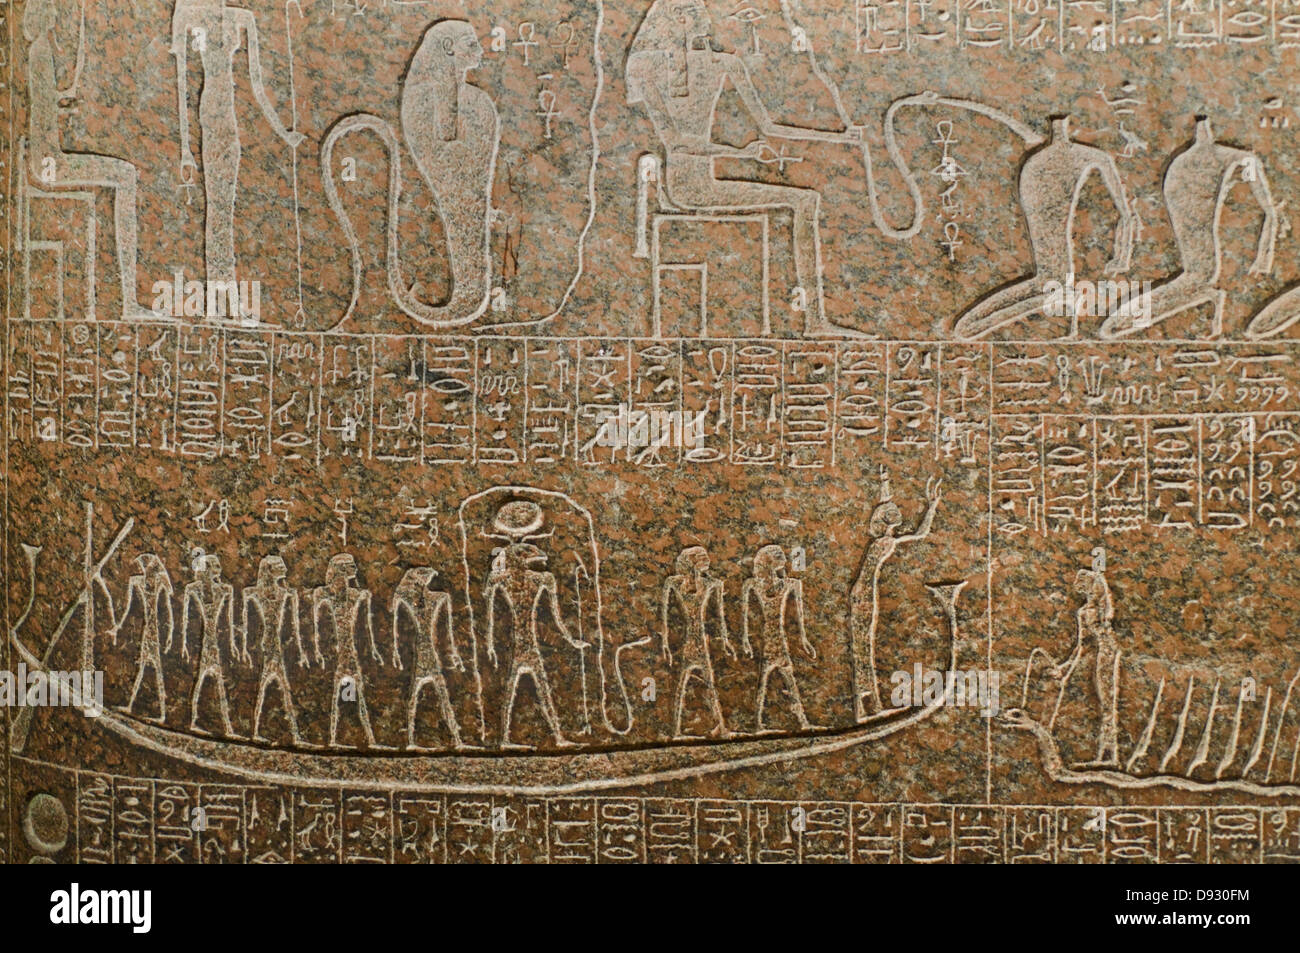 Sarcophage du Roi Ramsès III (détail) 1184 - 1153 av. J.-C. L'Égypte ancienne Musée du Louvre - Paris Banque D'Images